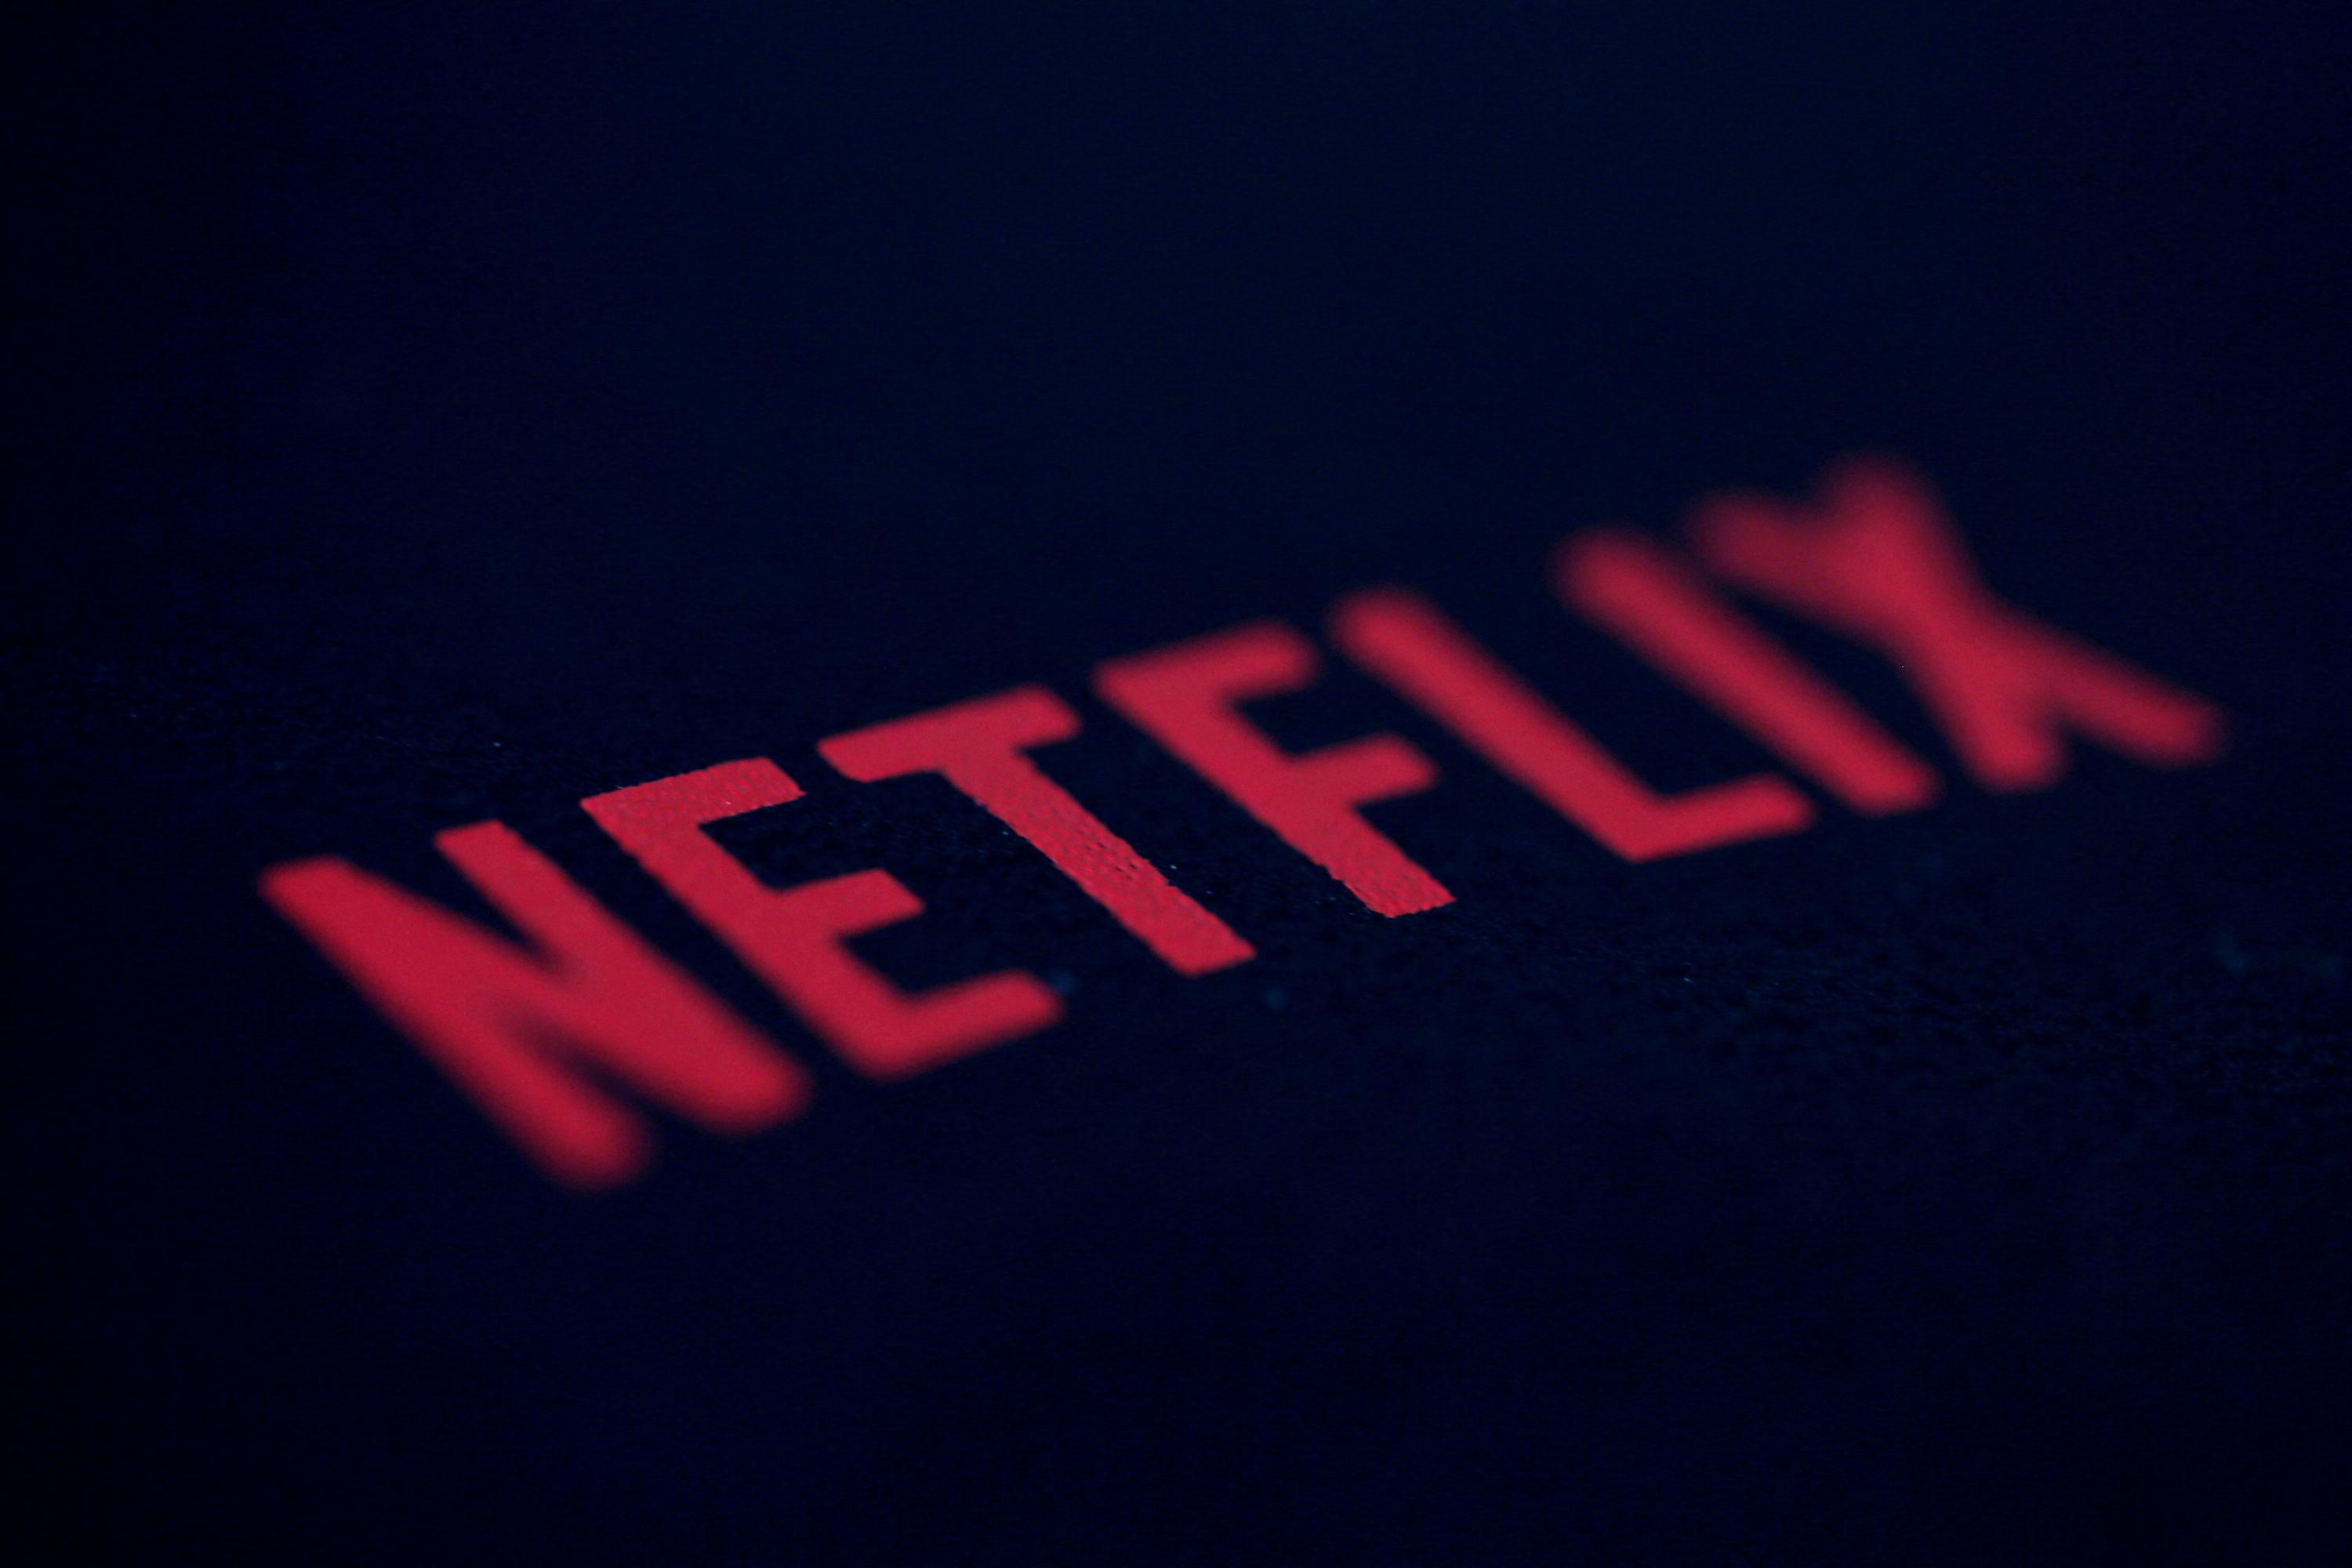 Netflix elimina plano básico de assinatura nos EUA e Reino Unido -  NerdBunker